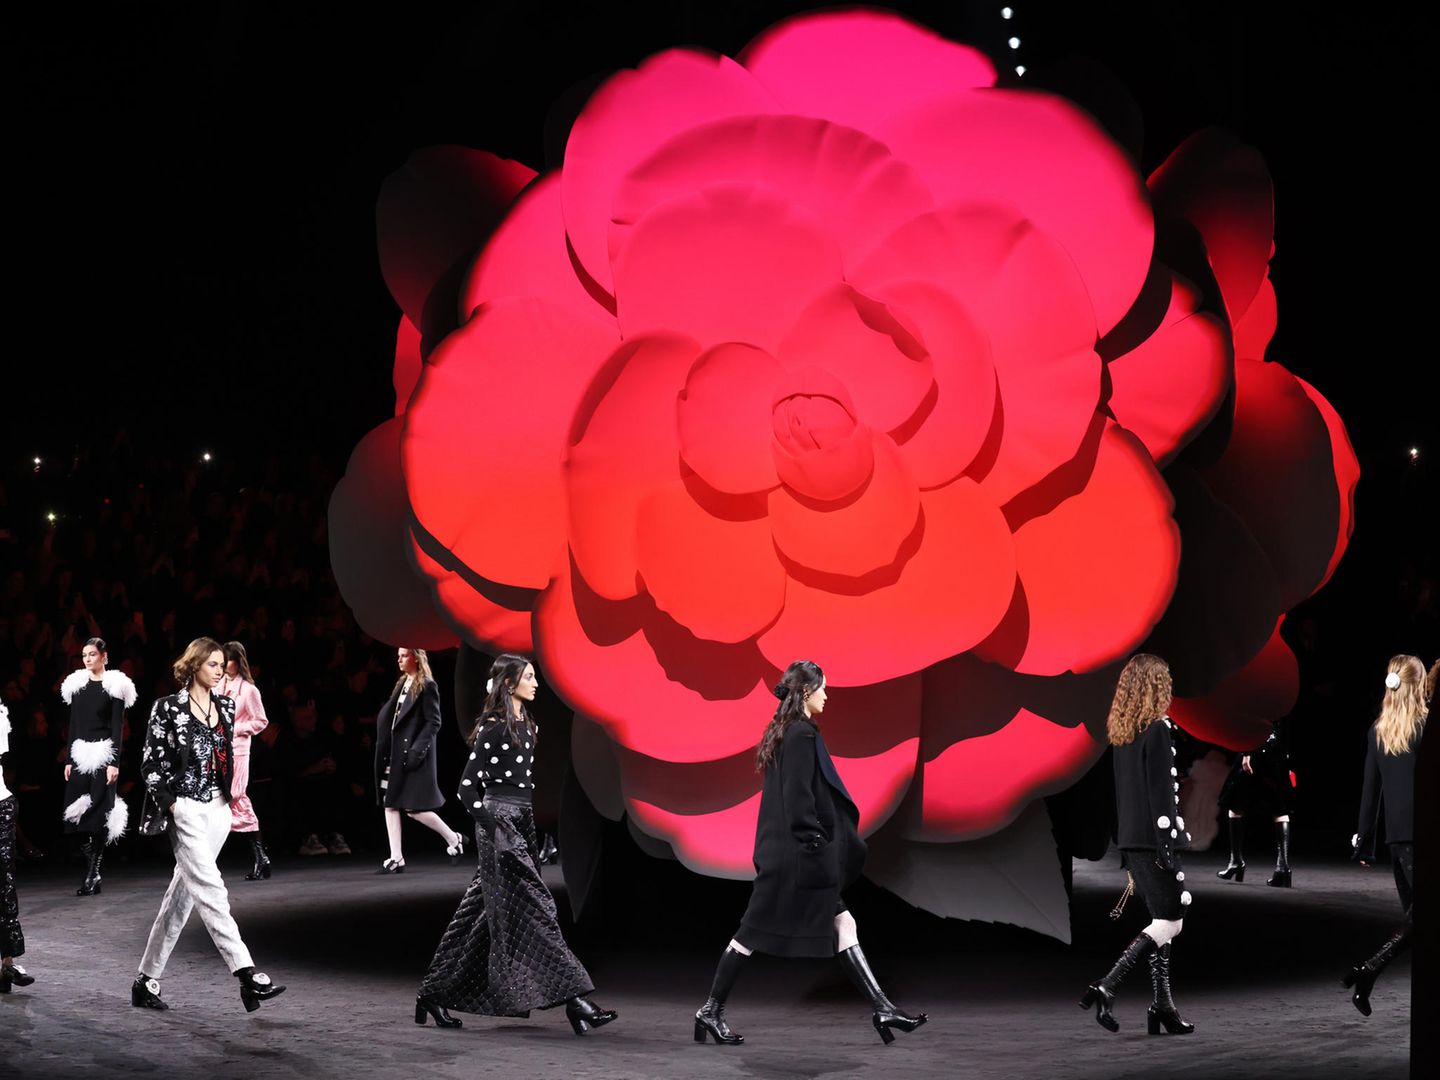 Die Chanel-Show zur Herbst/Winter Kollektion findet im Grand Palais Éphémère in Paris statt. Der Hintergrund des Laufstegs wird von einer überdimensionale Kamelie geschmückt. Die Kamelie gilt als typisches Chanel-Motiv und findet sich auch in der neuen Kollektion wieder.